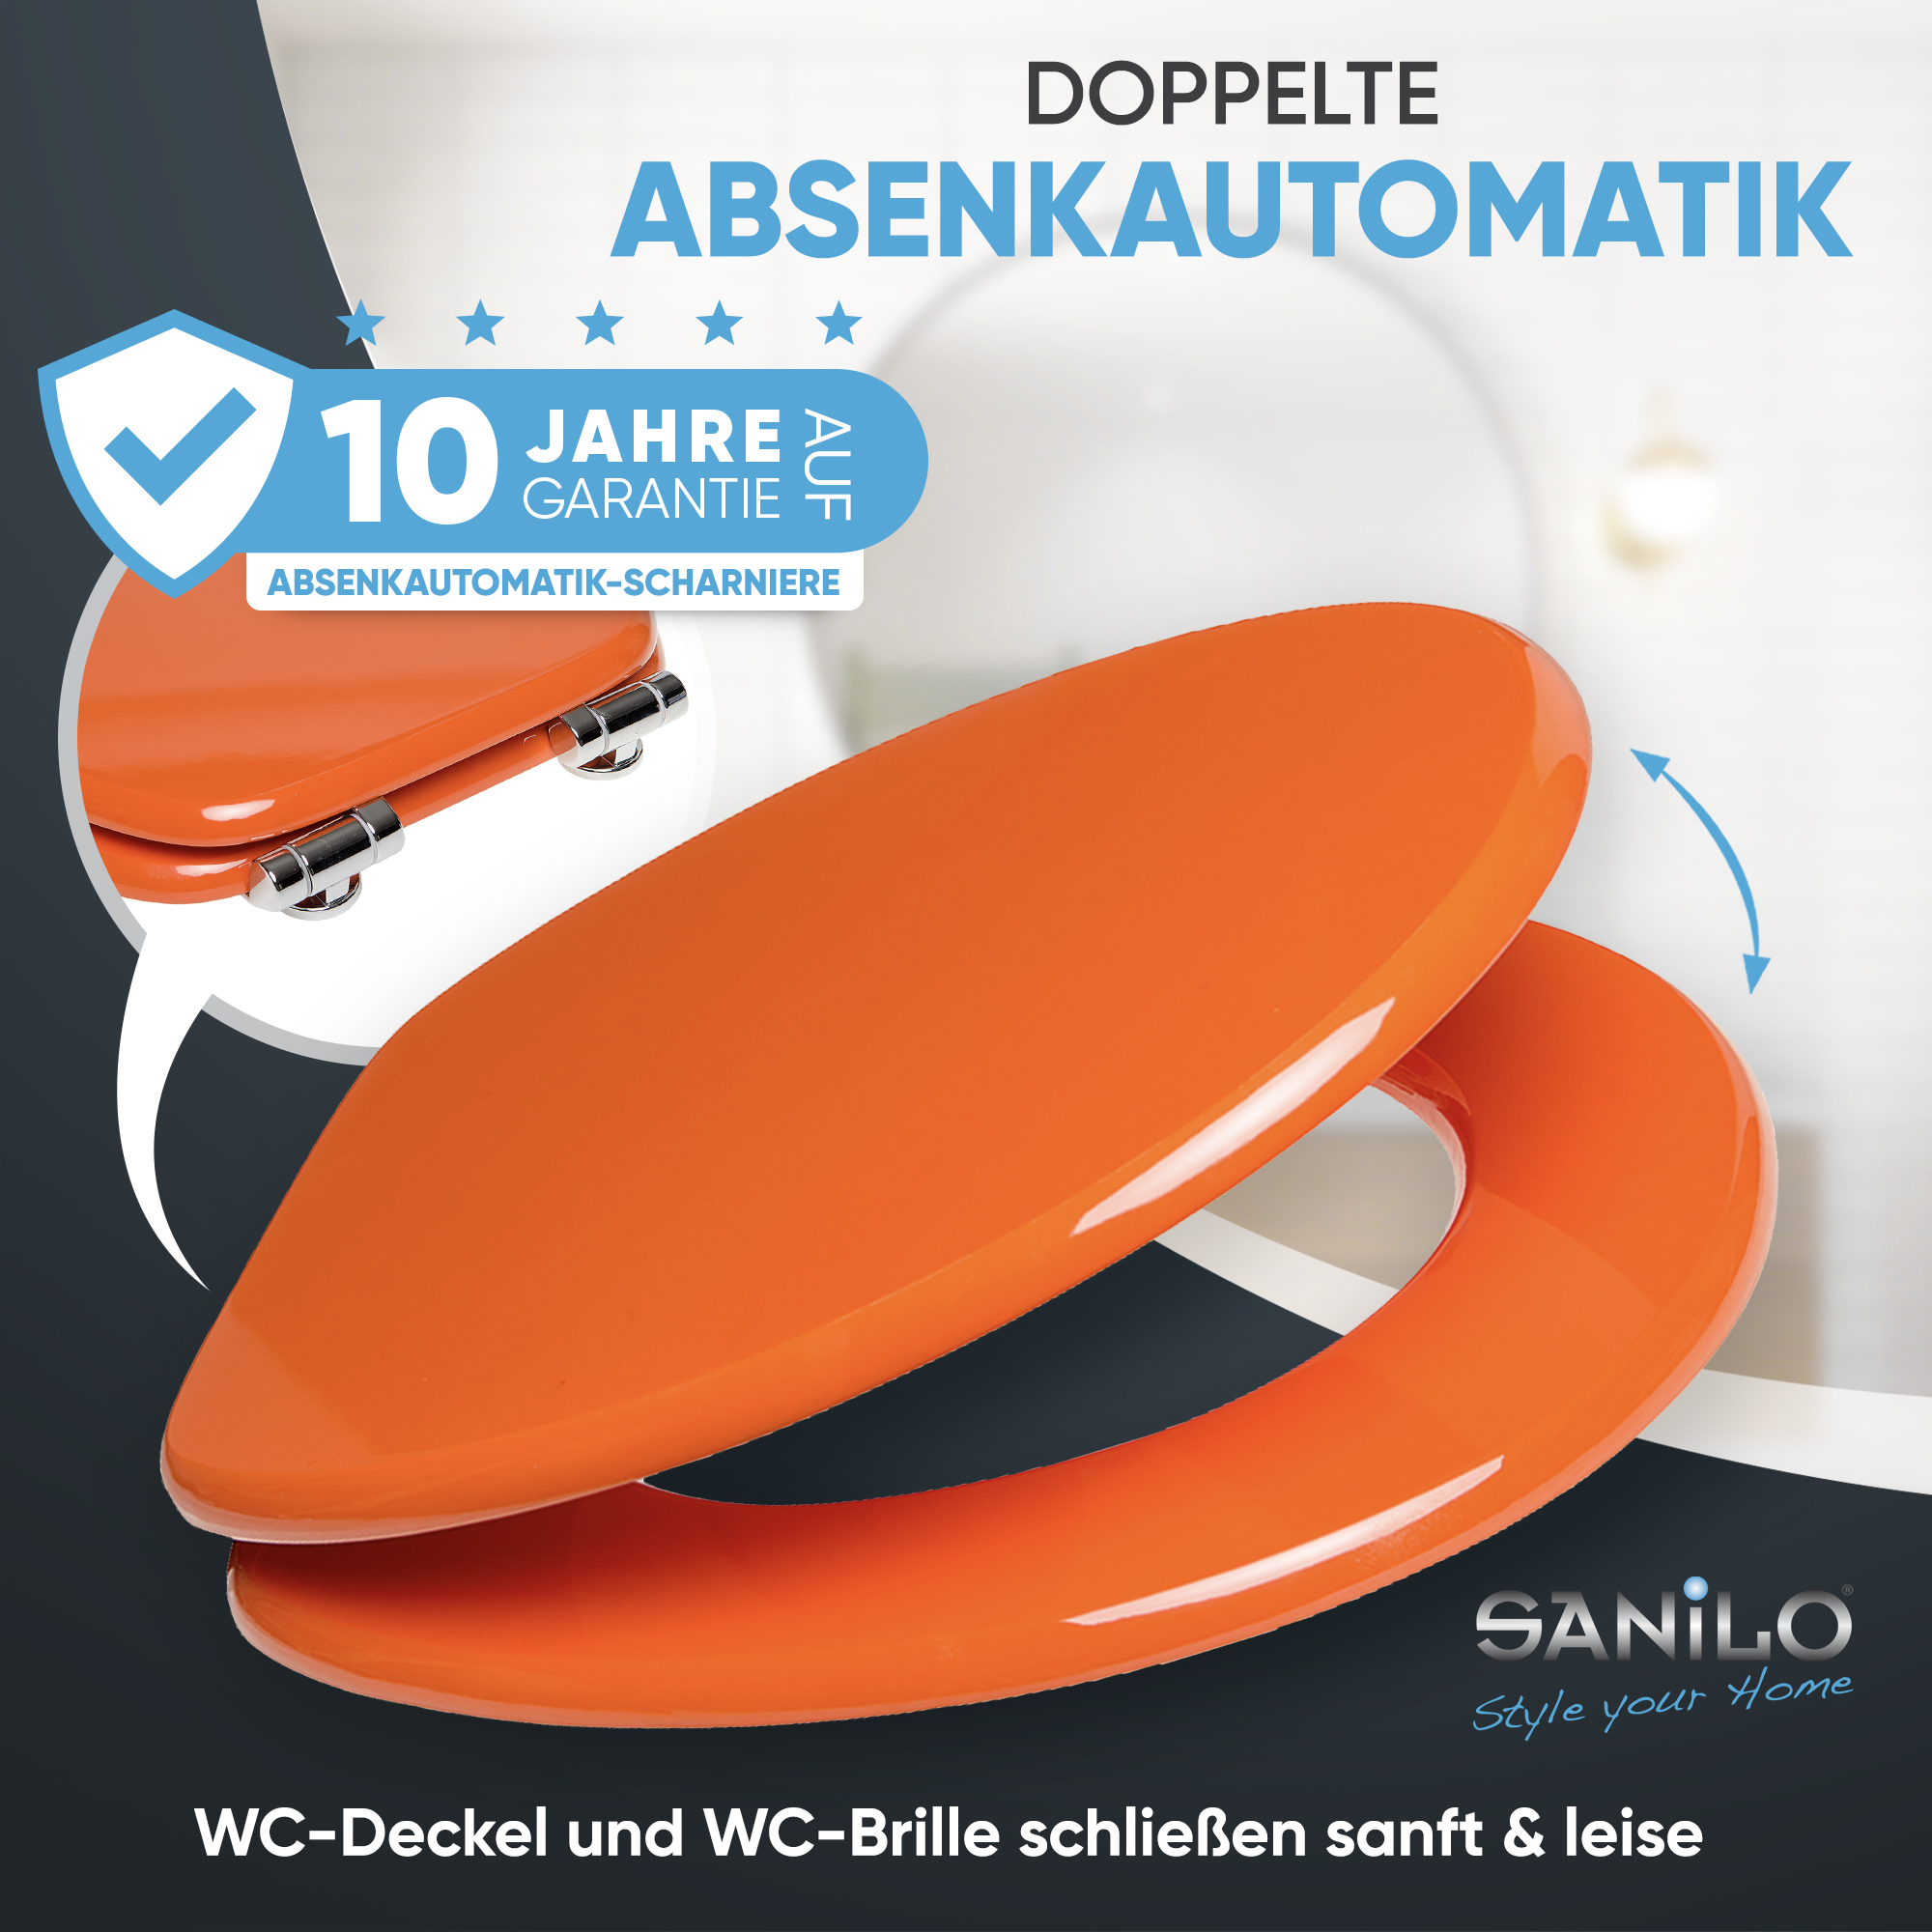 direkt Absenkautomatik vom - Hersteller-A164689 Orange mit Toilettendeckel WC-Sitz Premium